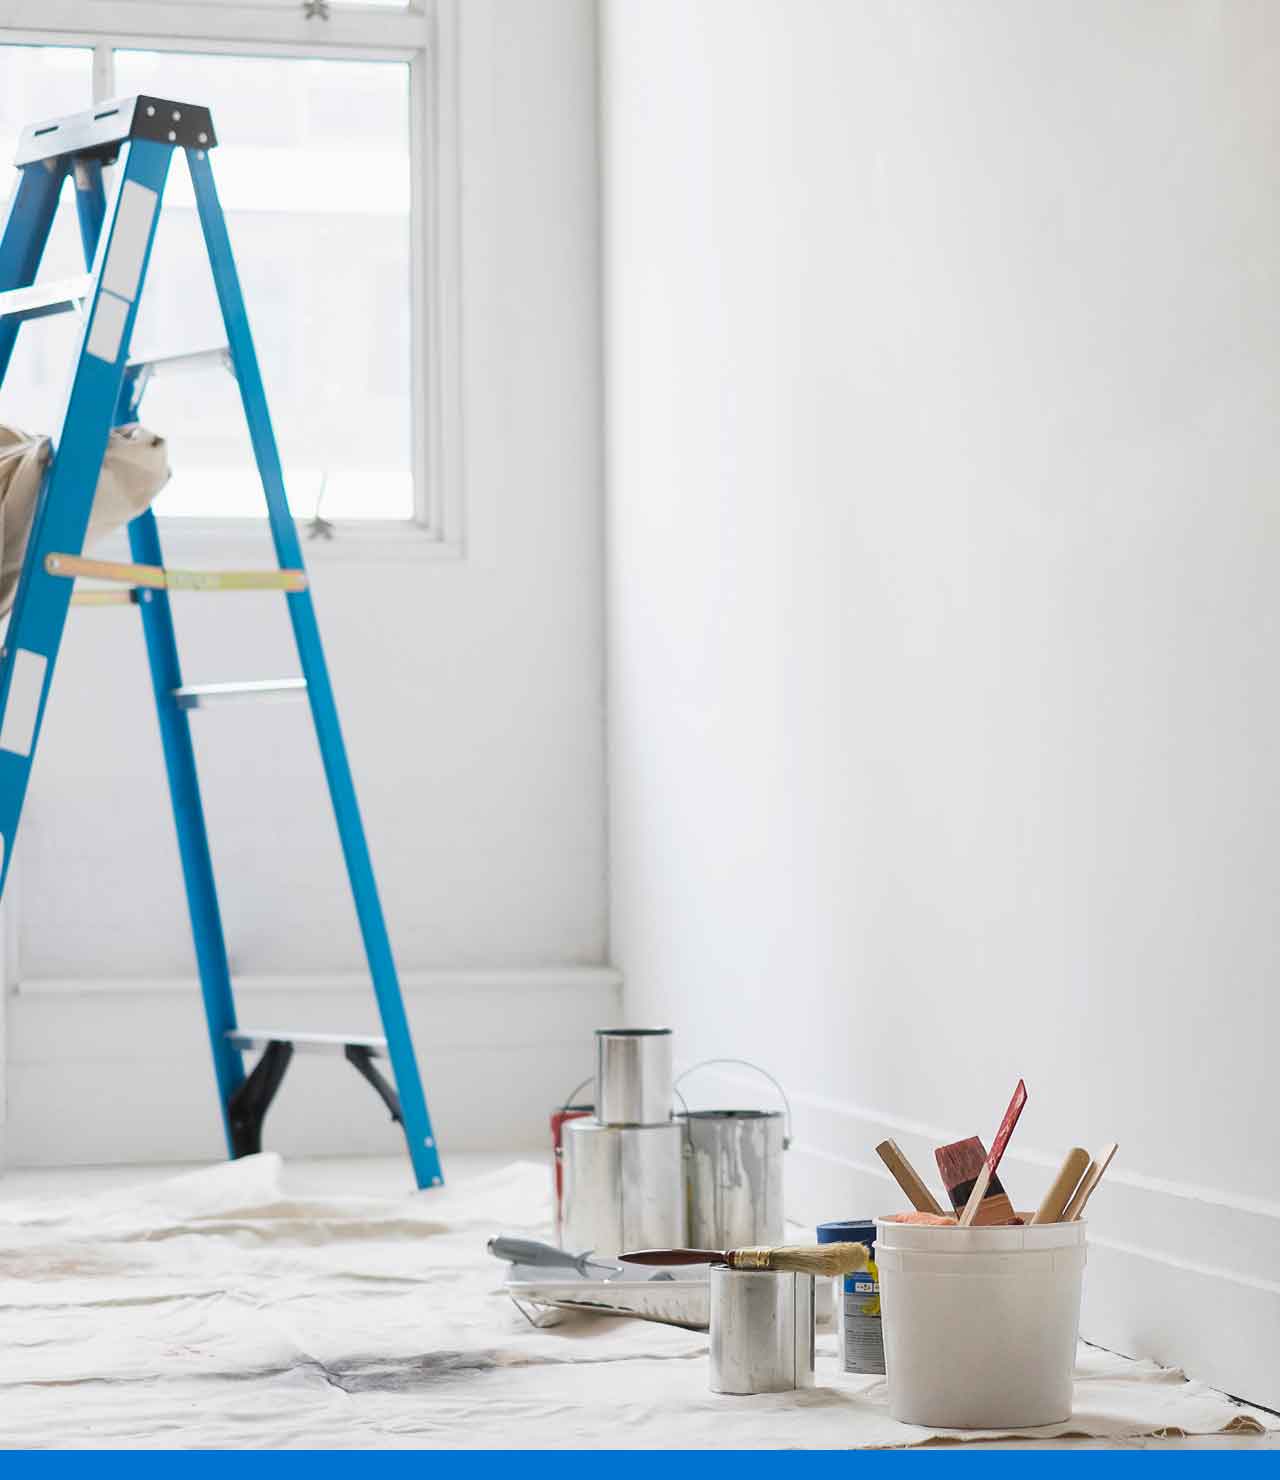 Elige los tipos de pintura adecuados para tus espacios